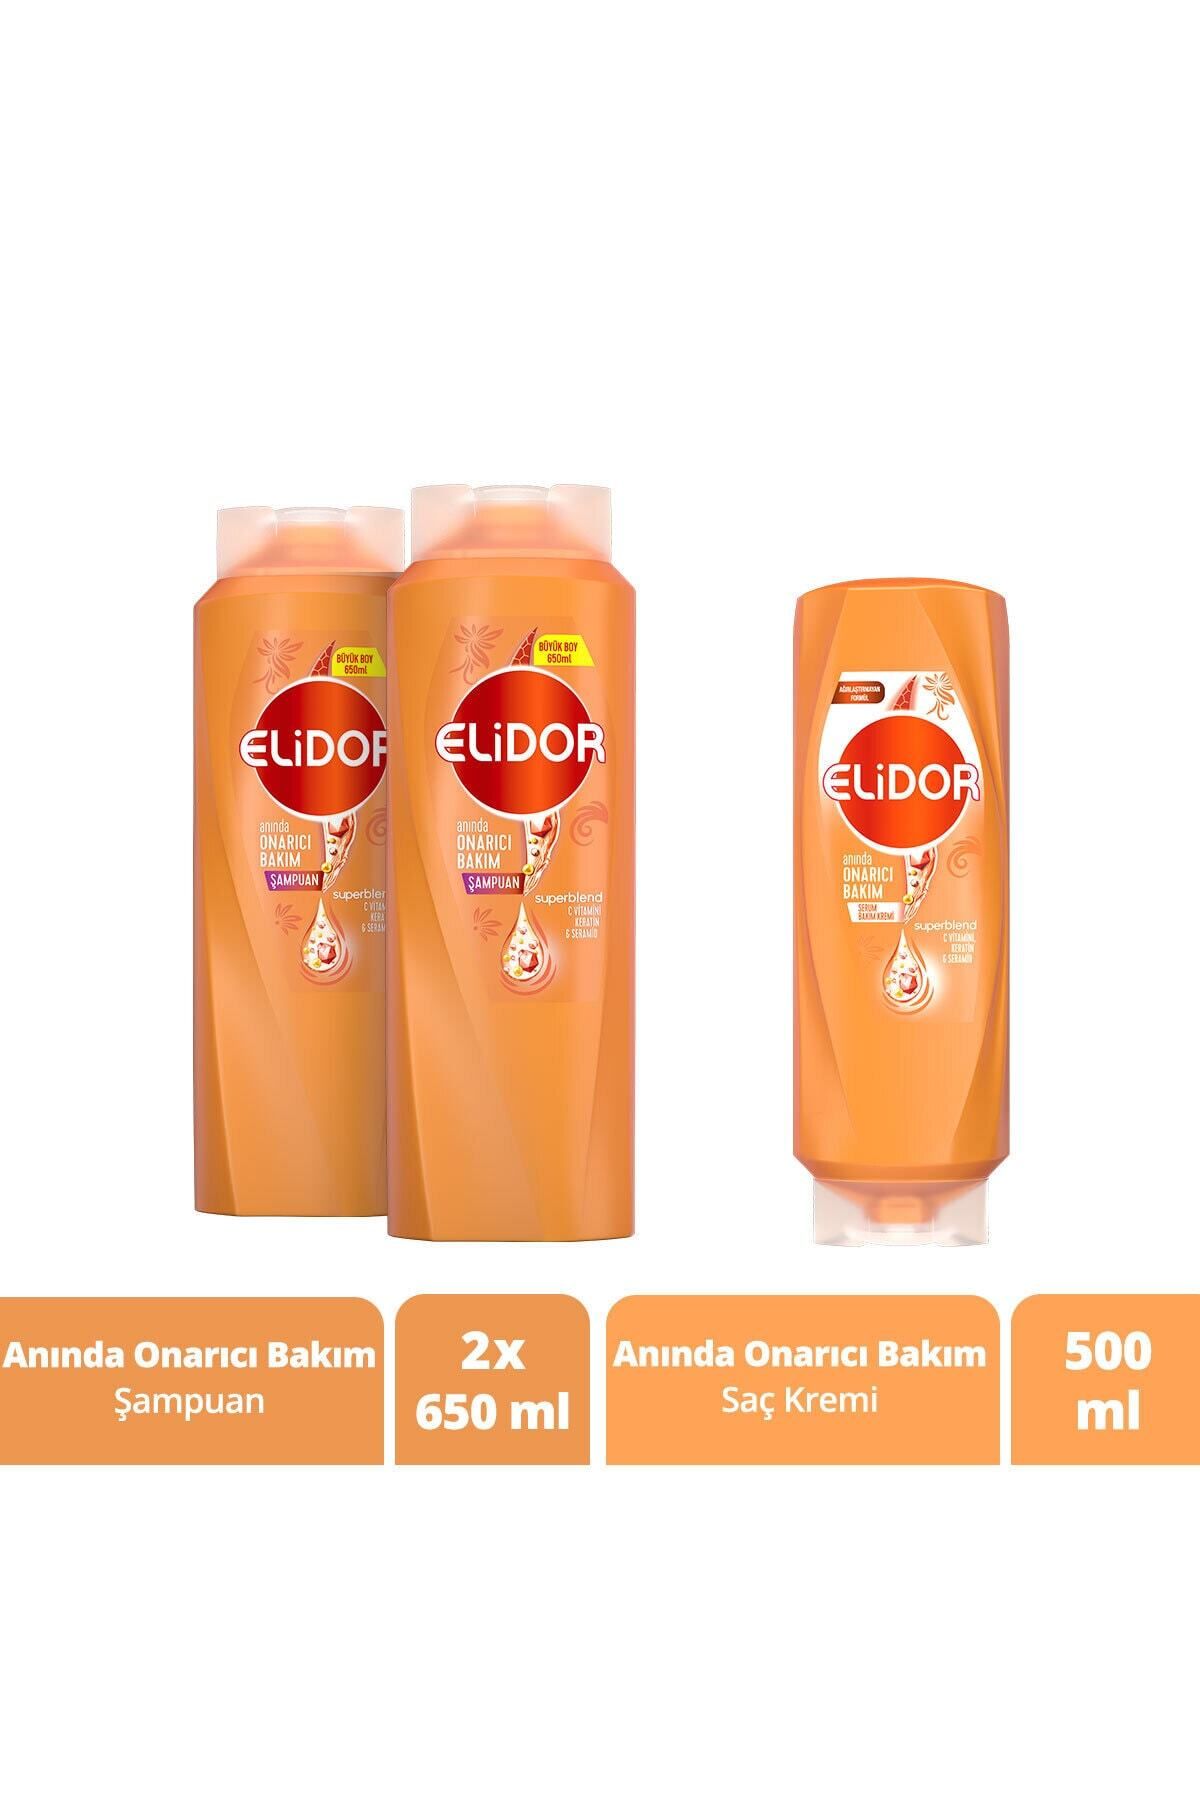 Elidor Anında Onarıcı Bakım Şampuan 650 ml X2 + Anında Onarıcı Bakım Saç Kremi 500 ml